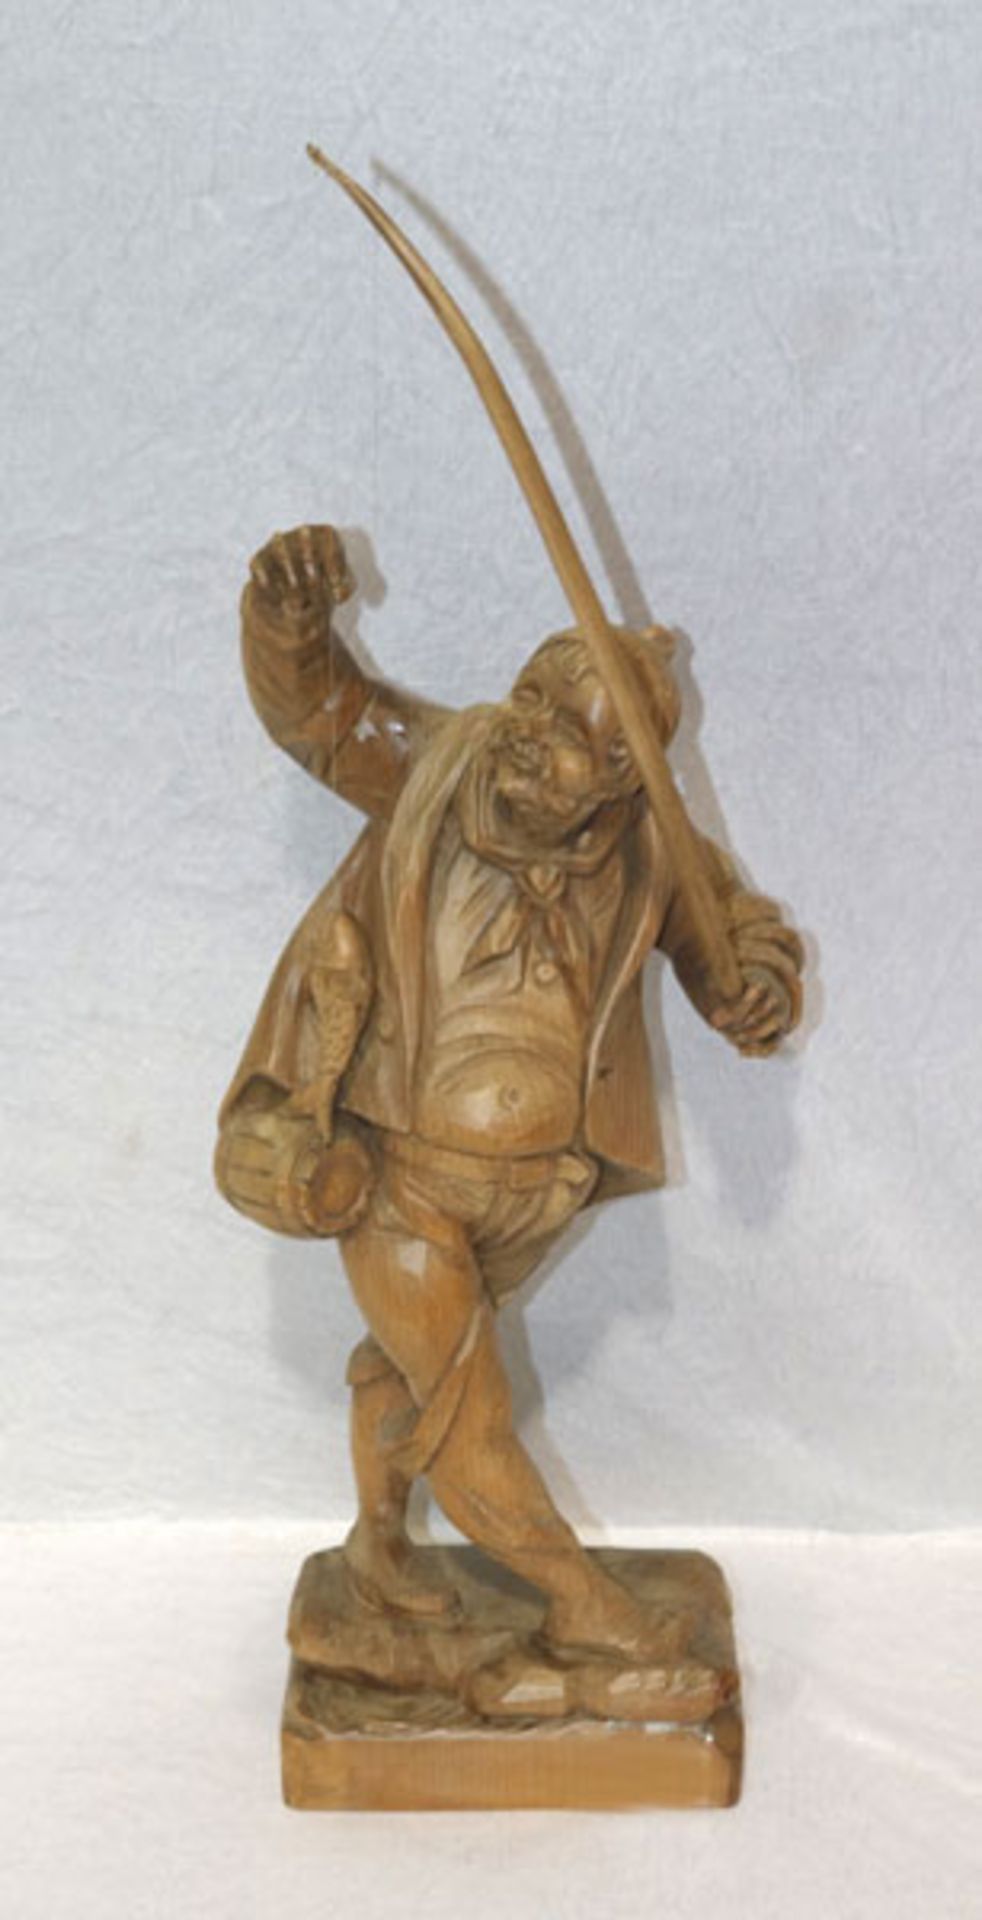 Holz Figurenskulptur 'Fischer mit Angel und Fisch', monogrammiert PF, H 66 cm, B 19 cm, T 12 cm,